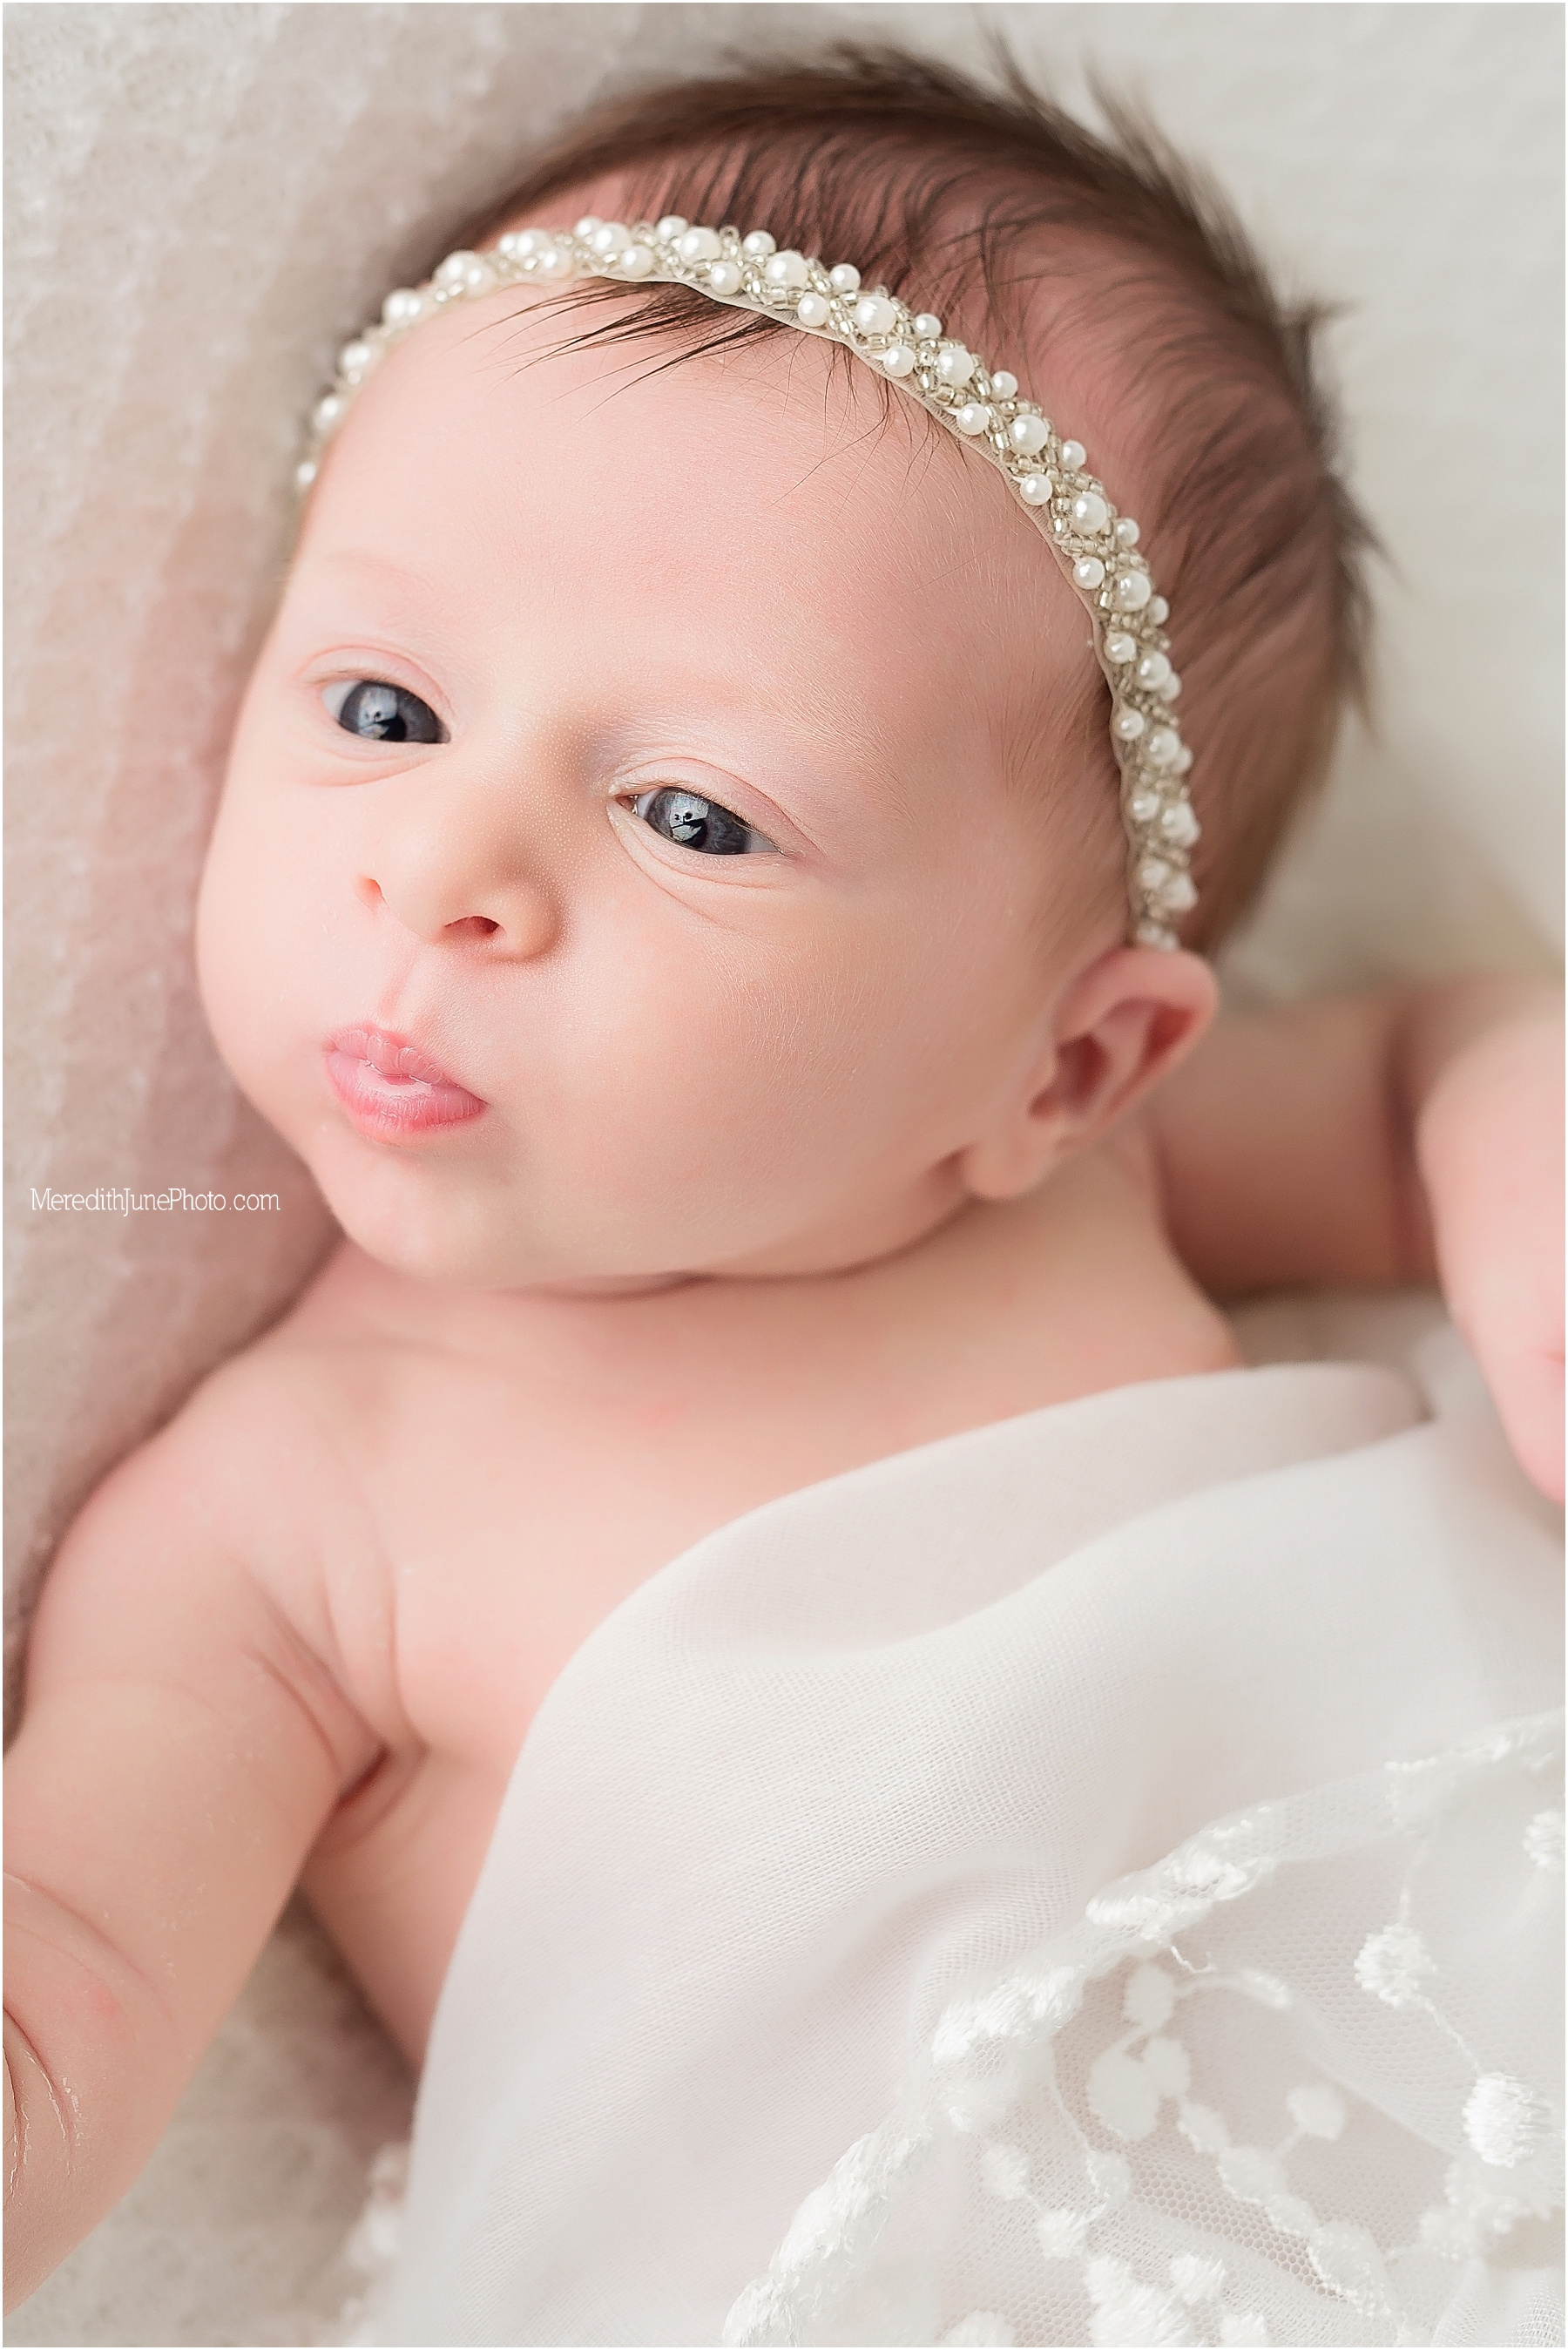 Baby girl newborn portraits 